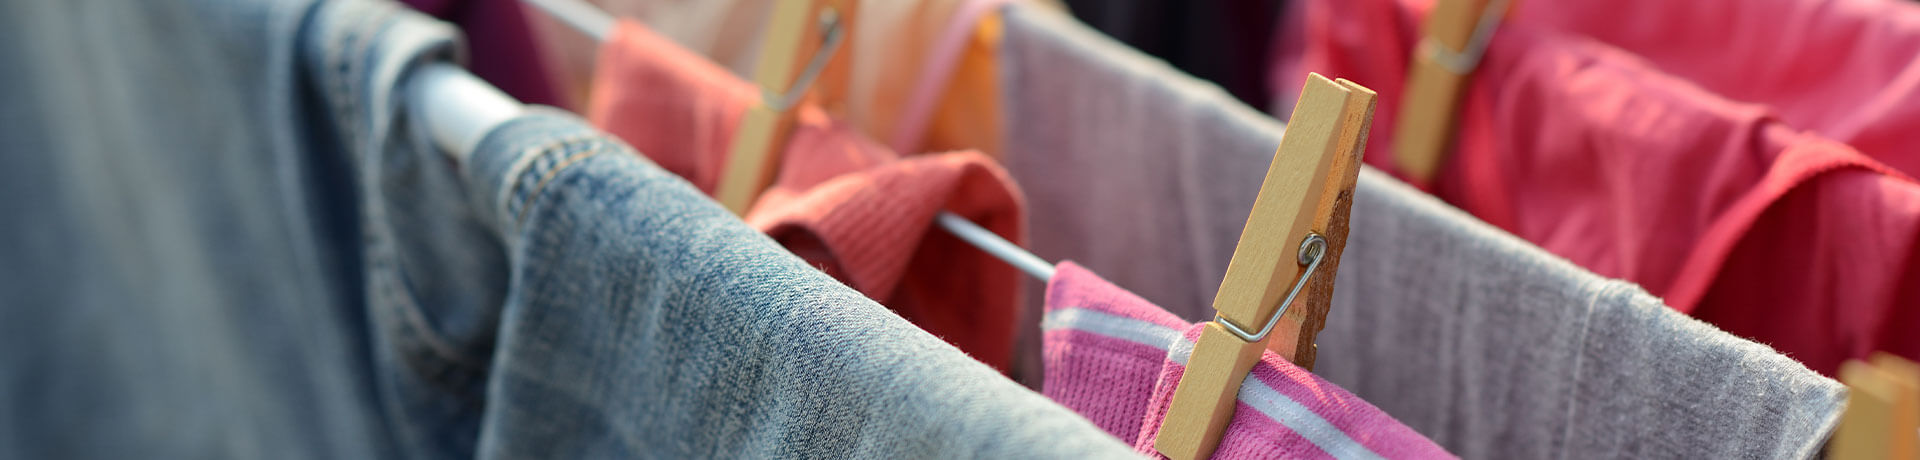 Handtücher zum Trocknen auf Wäscheständer Haushaltshilfe Ludwigslust